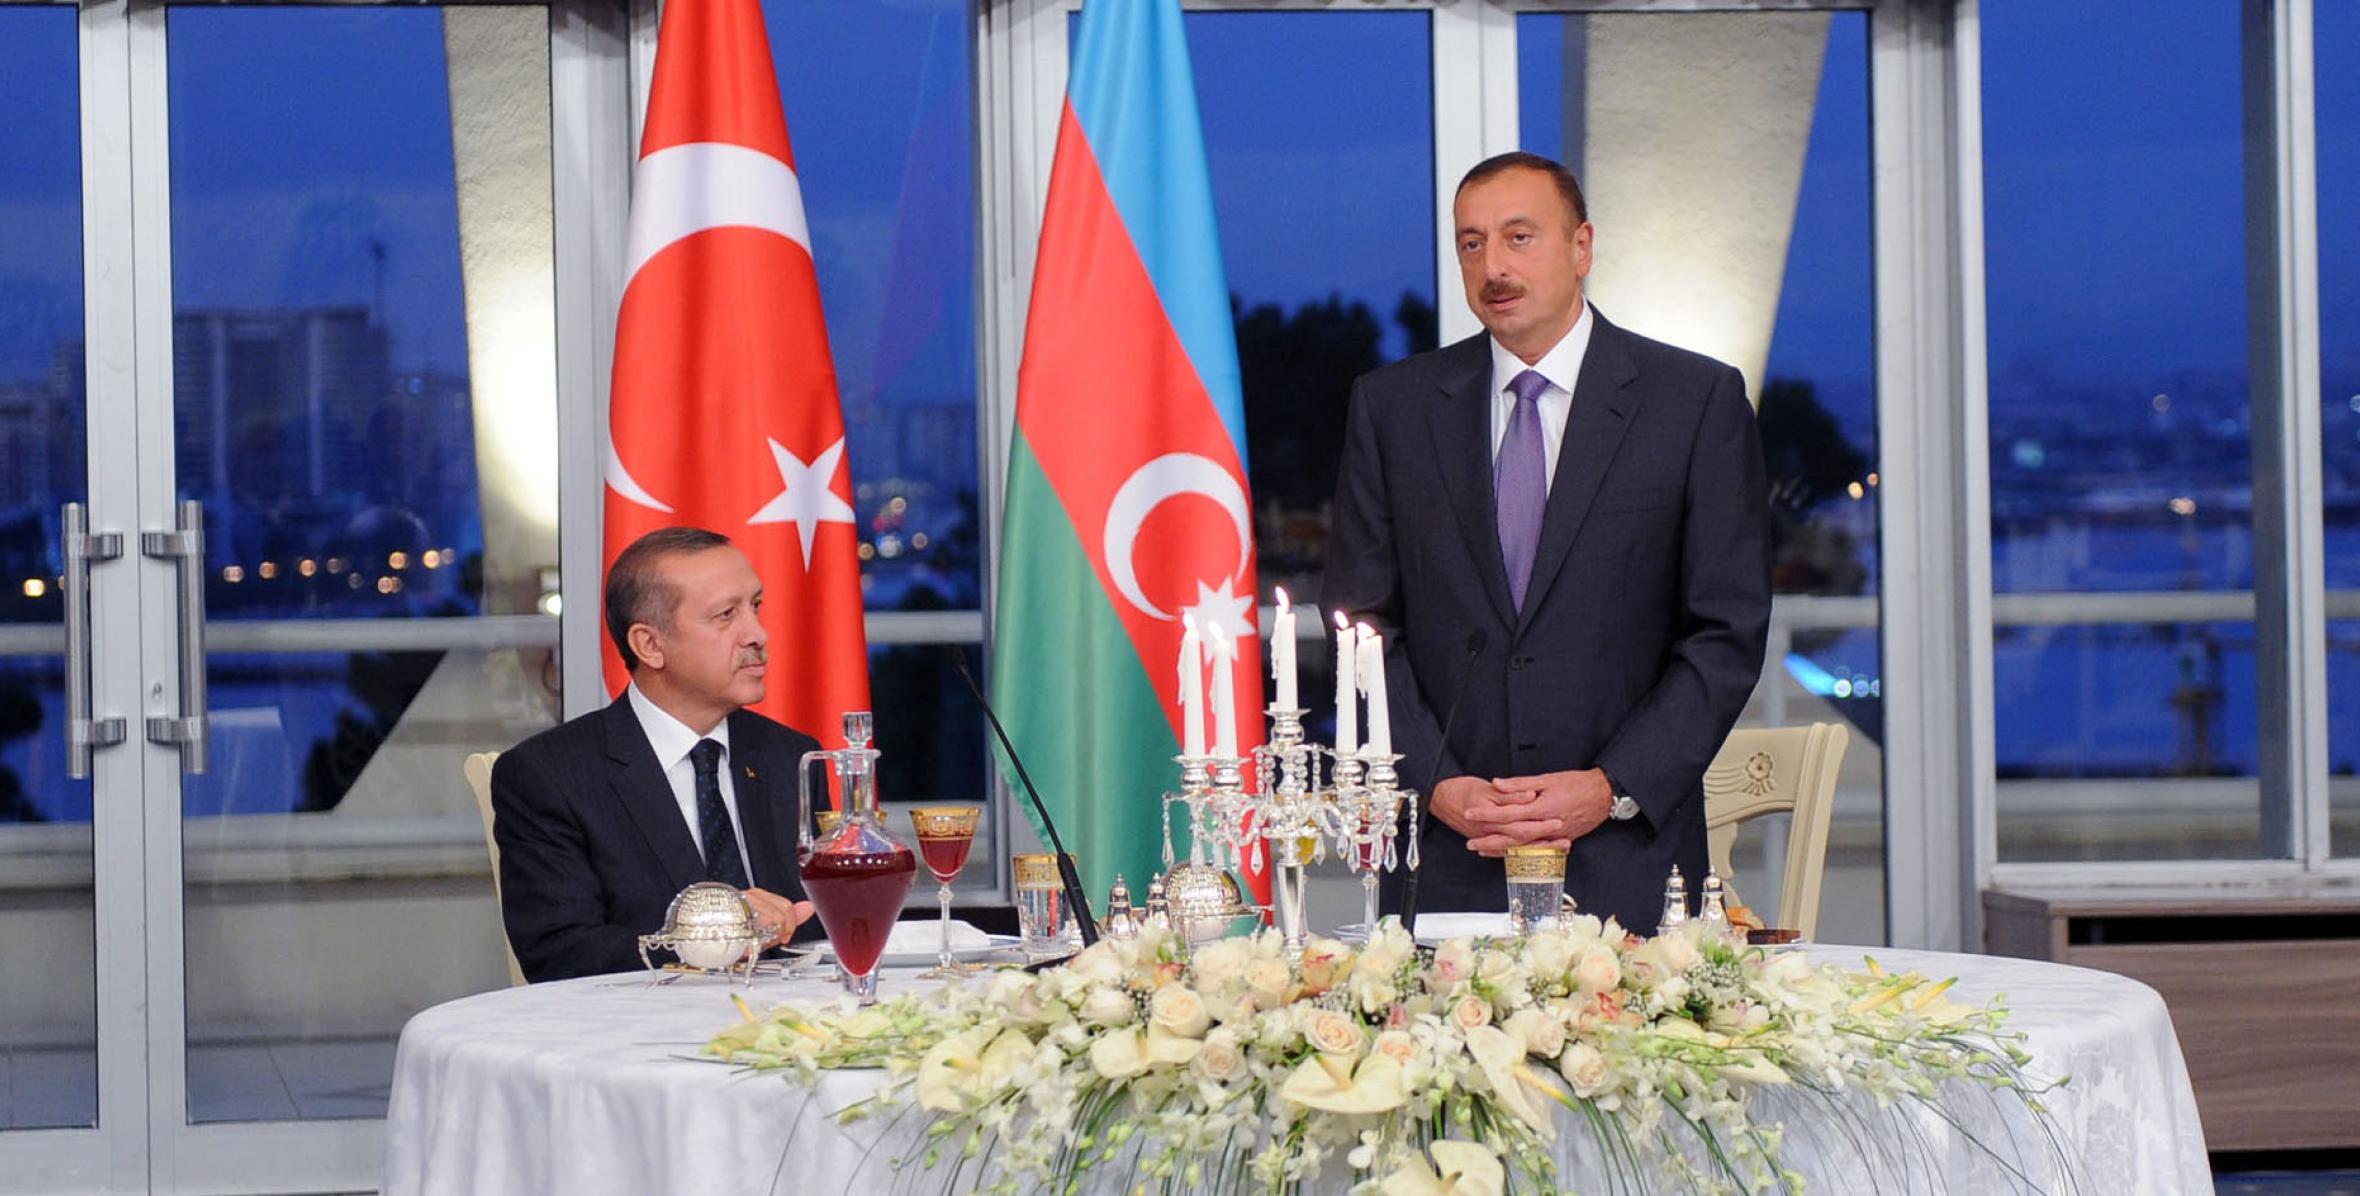 Был устроен официальный прием в честь премьер-министра Турецкой Республики Реджепа Тайиба Эрдогана